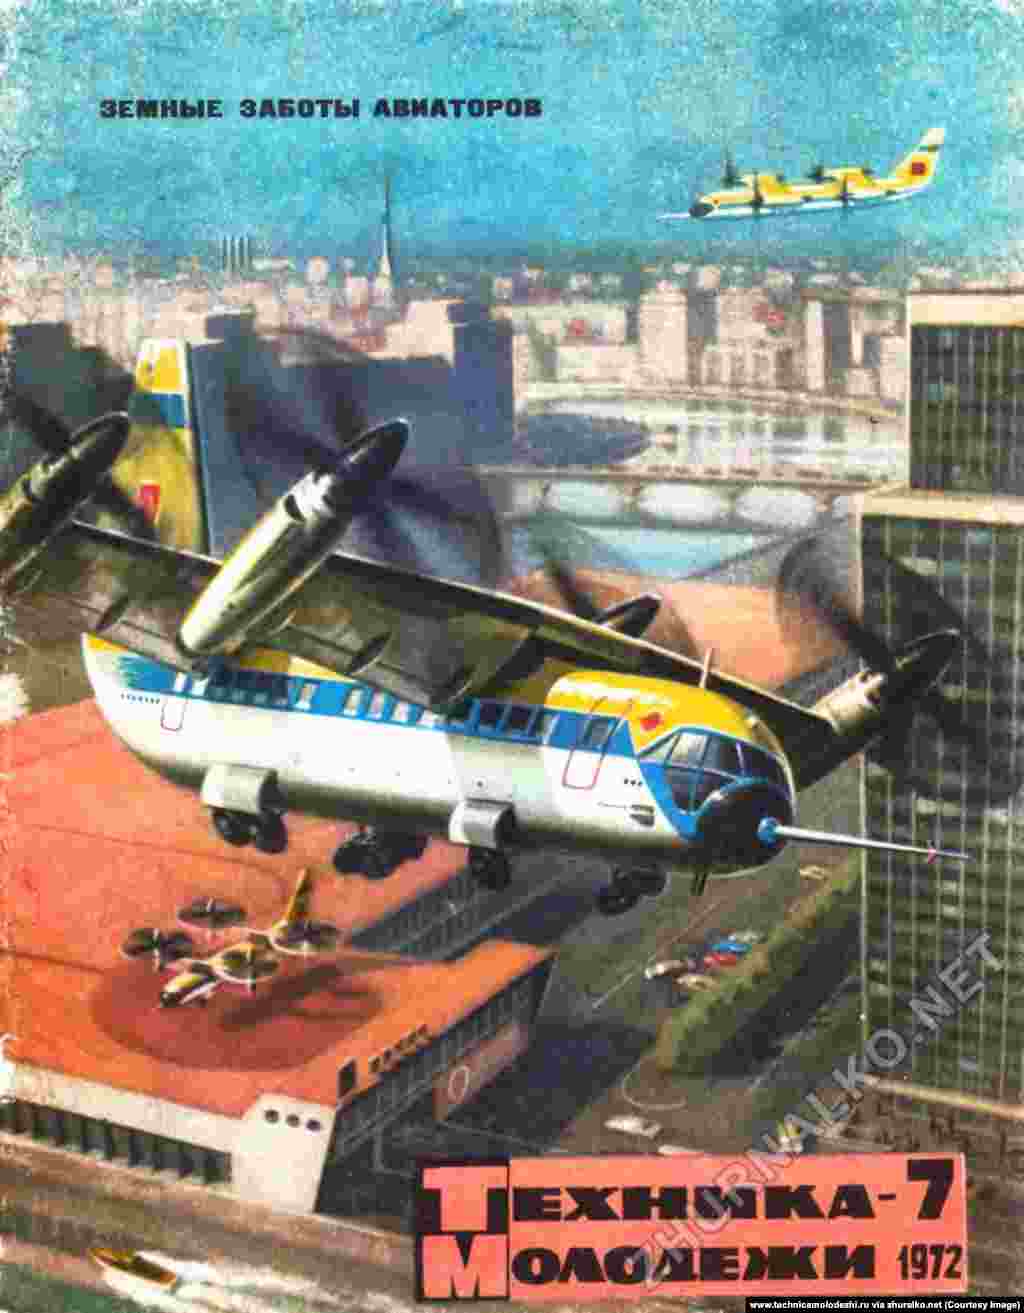 Літак із вертикальним зльотом і посадкою, намальований за 17 років до першого польоту схожого на це зображення повітряного судна Bell Boeing Osprey в США